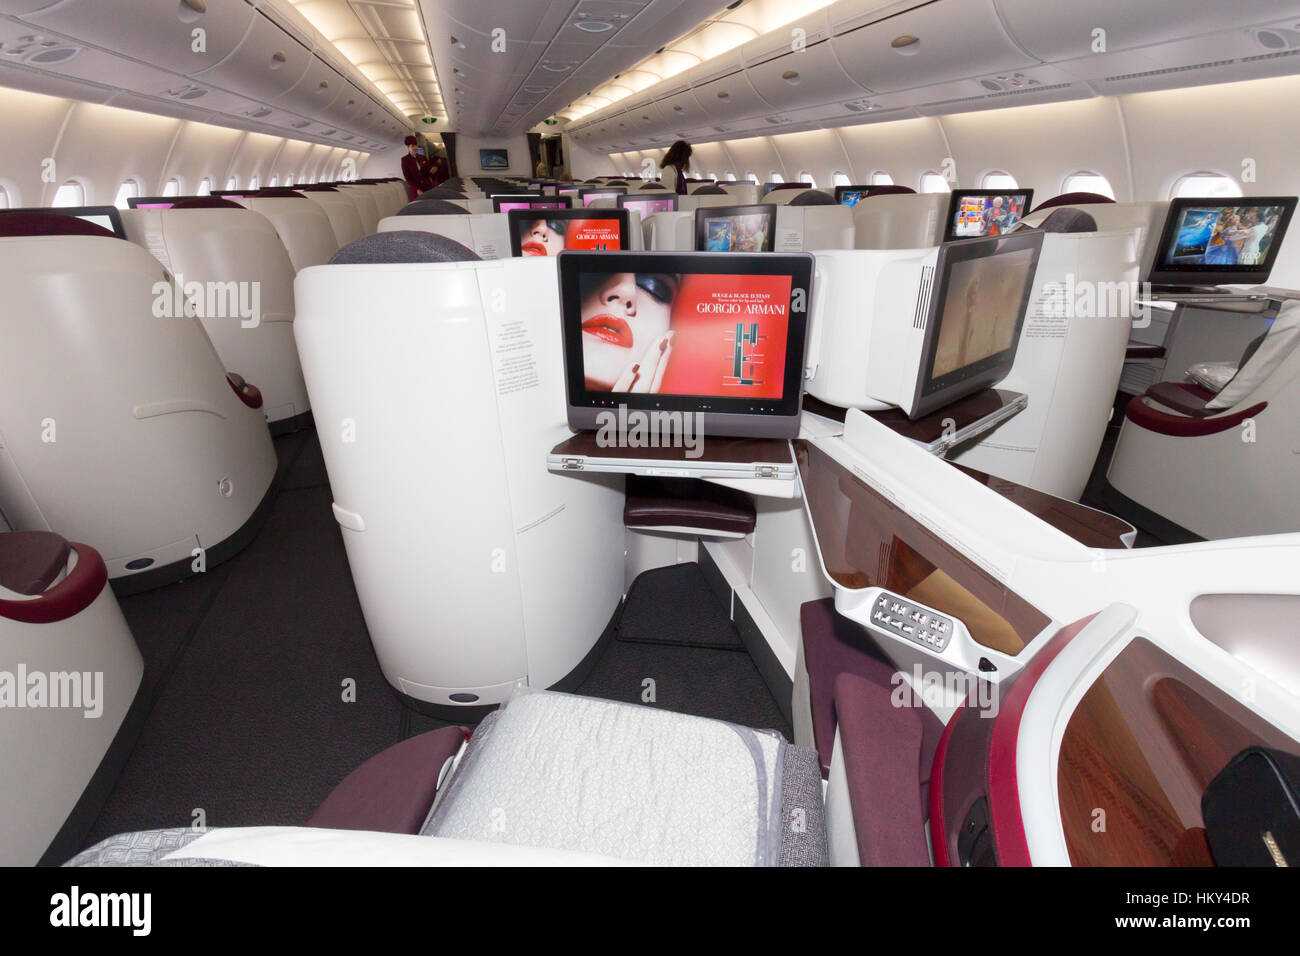 Parigi - giu 18, 2015: Layout di Business Class di Qatar Airways Airbus A380. L'A380 è il più grande aereo di linea di passeggeri in tutto il mondo. Foto Stock